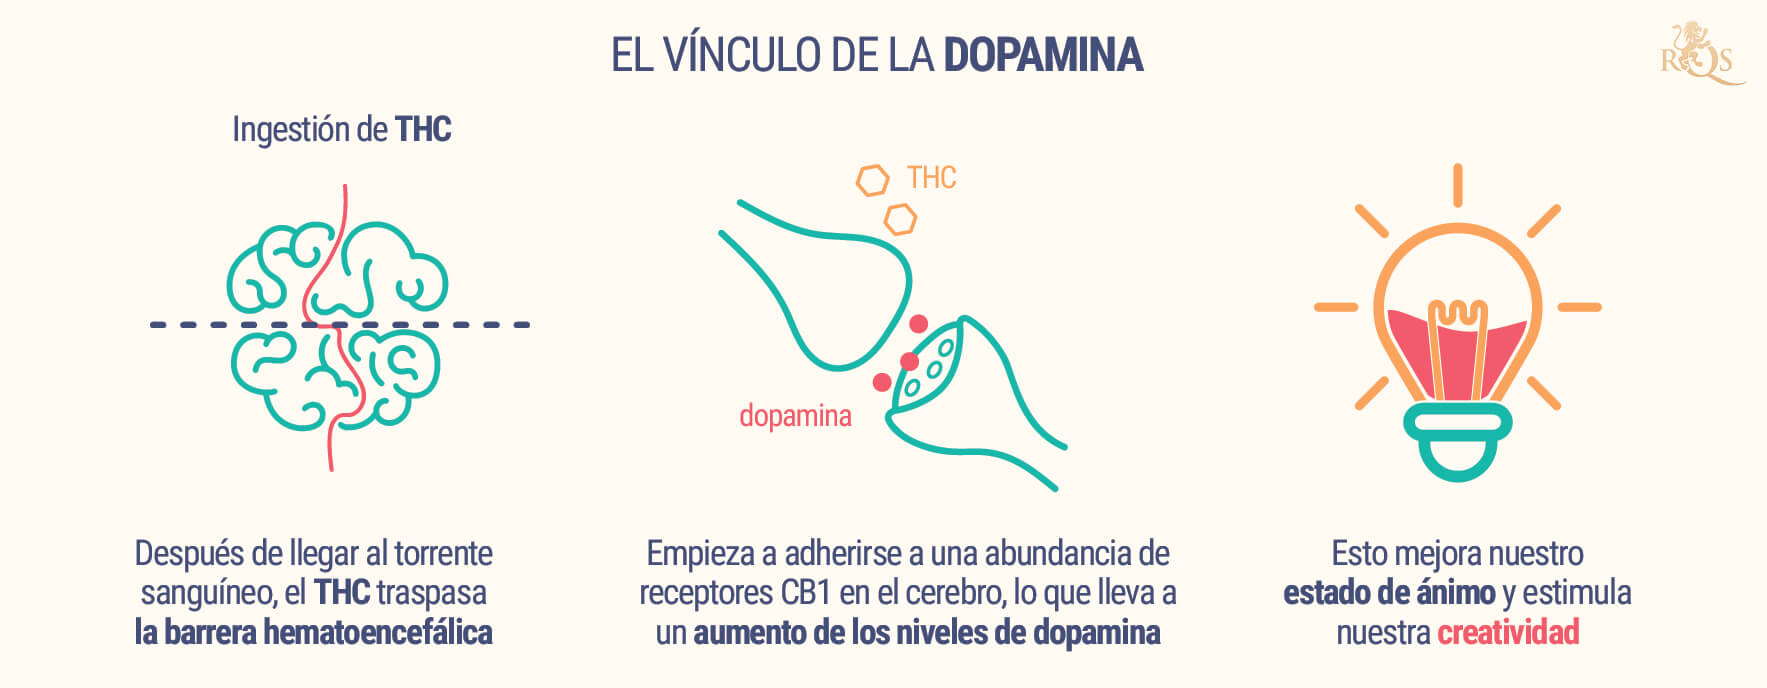 El Vínculo De La Dopamina